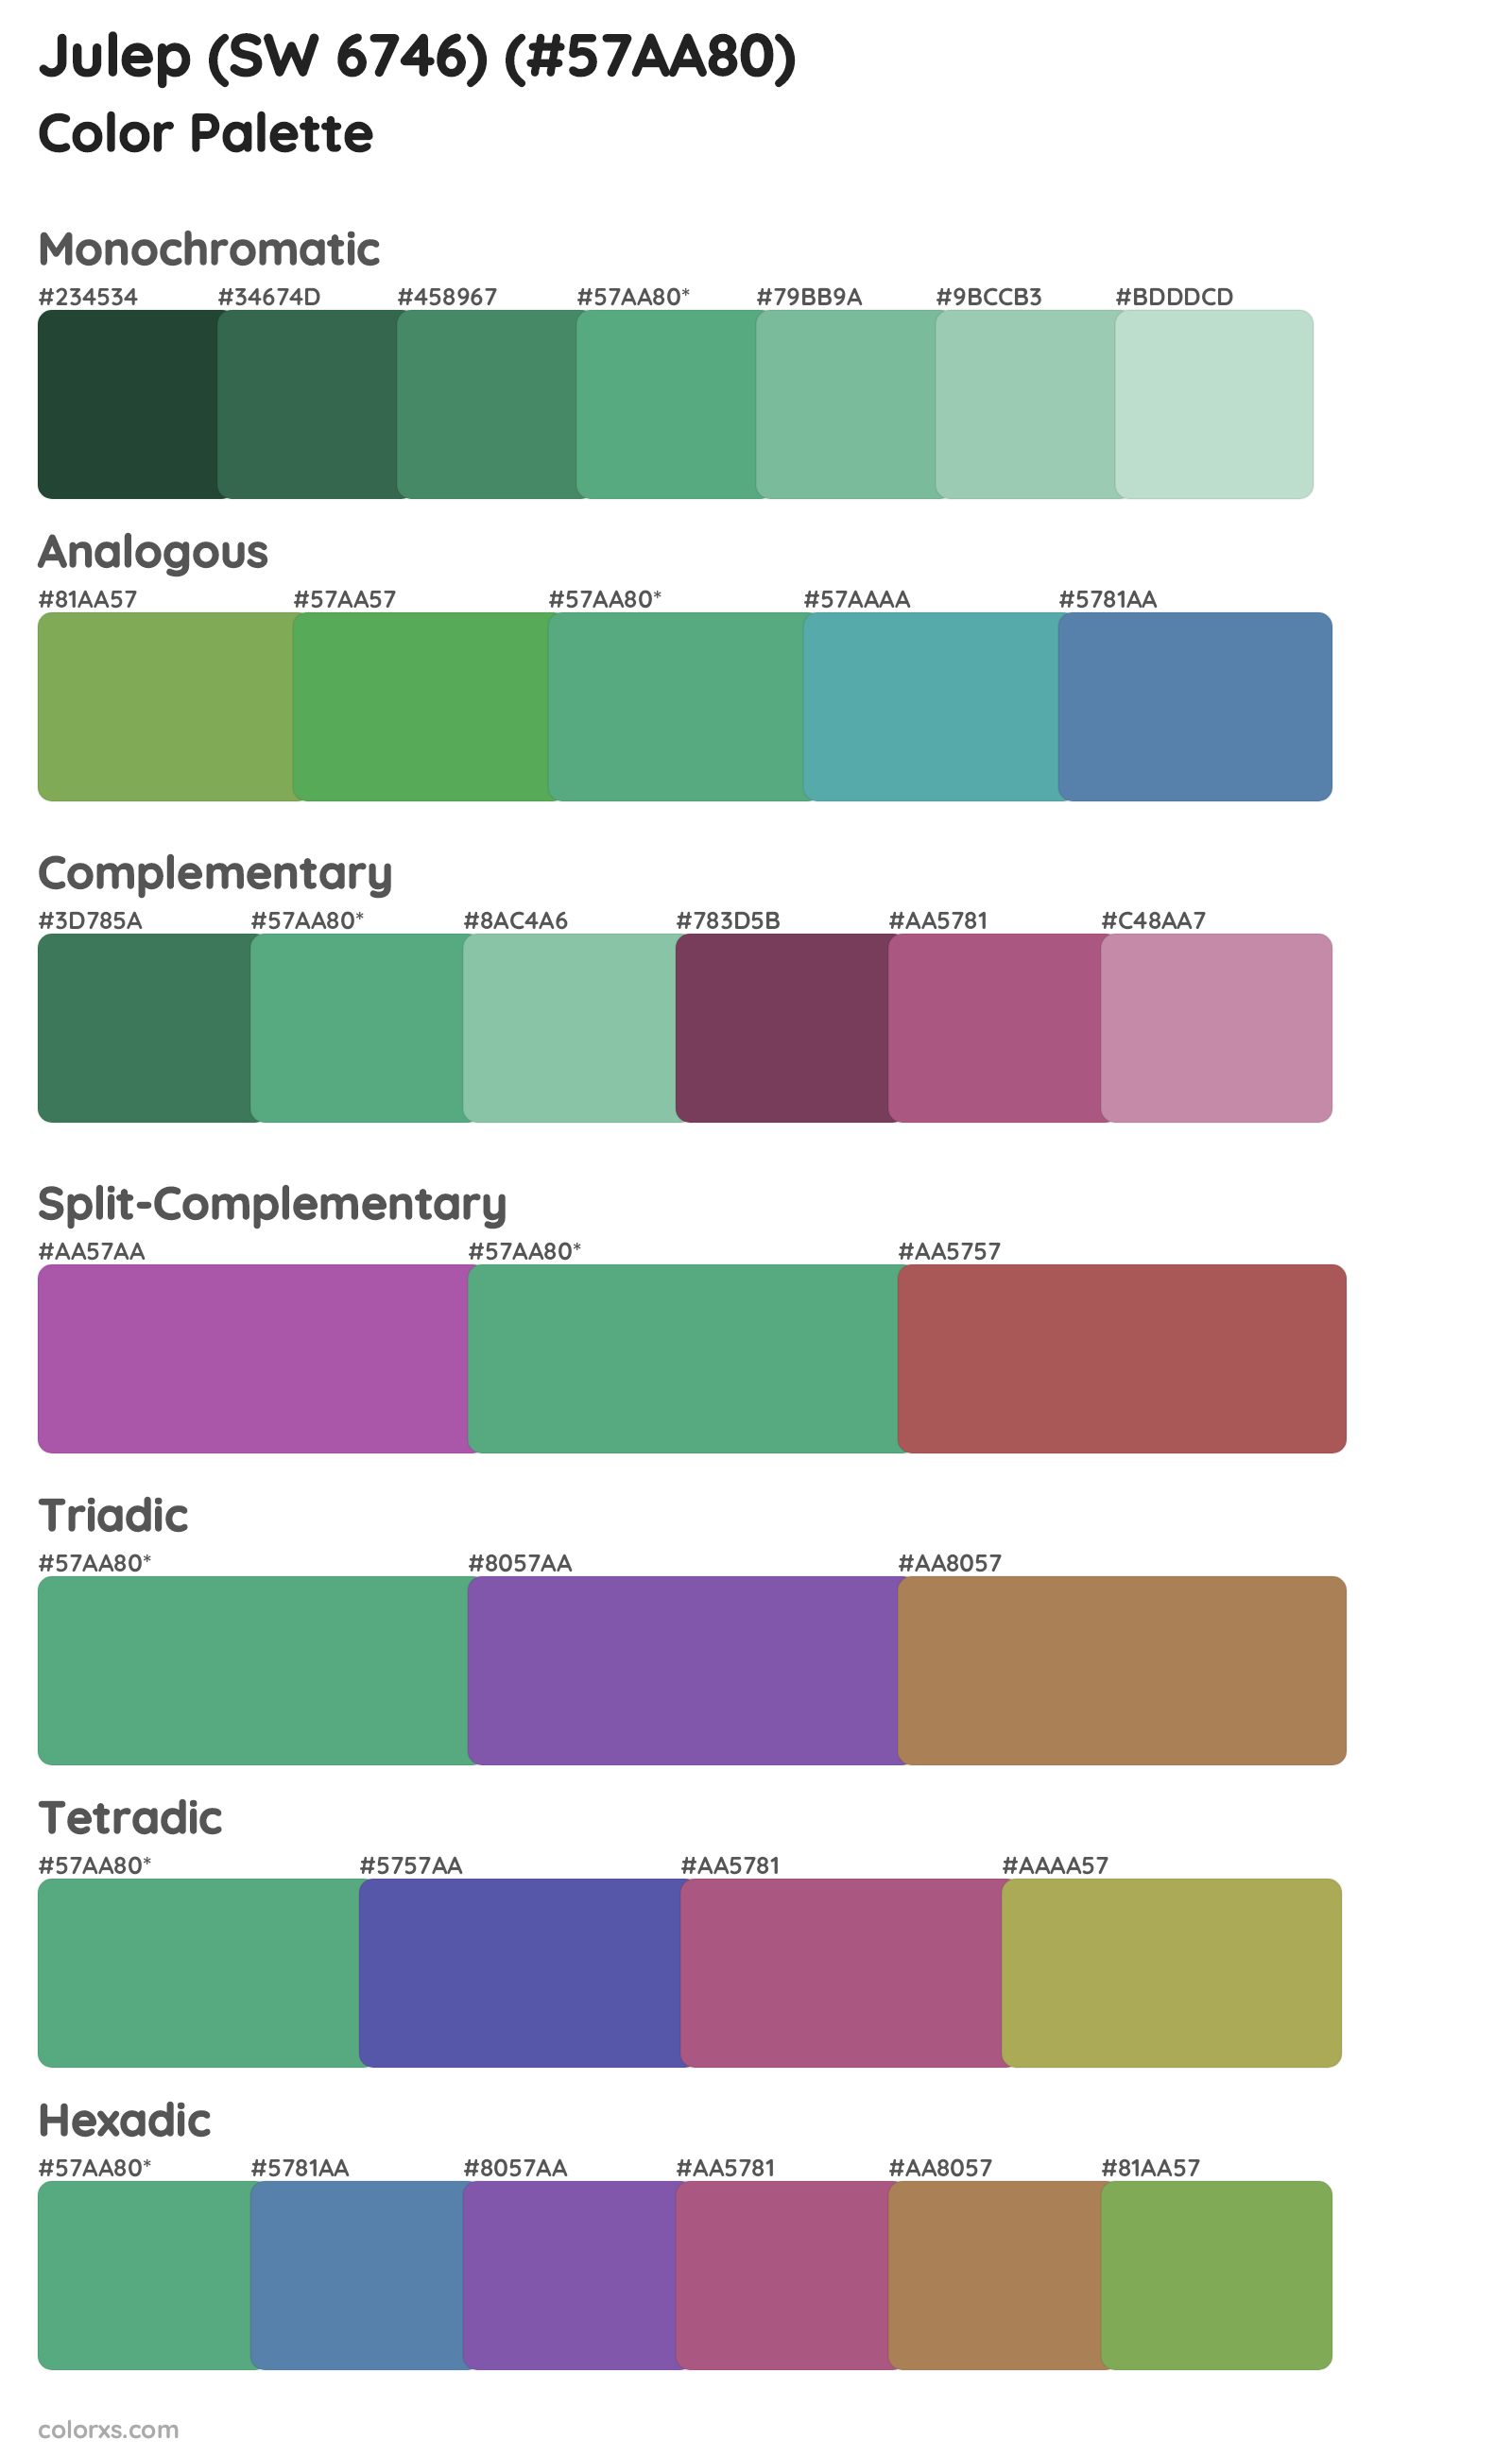 Julep (SW 6746) Color Scheme Palettes